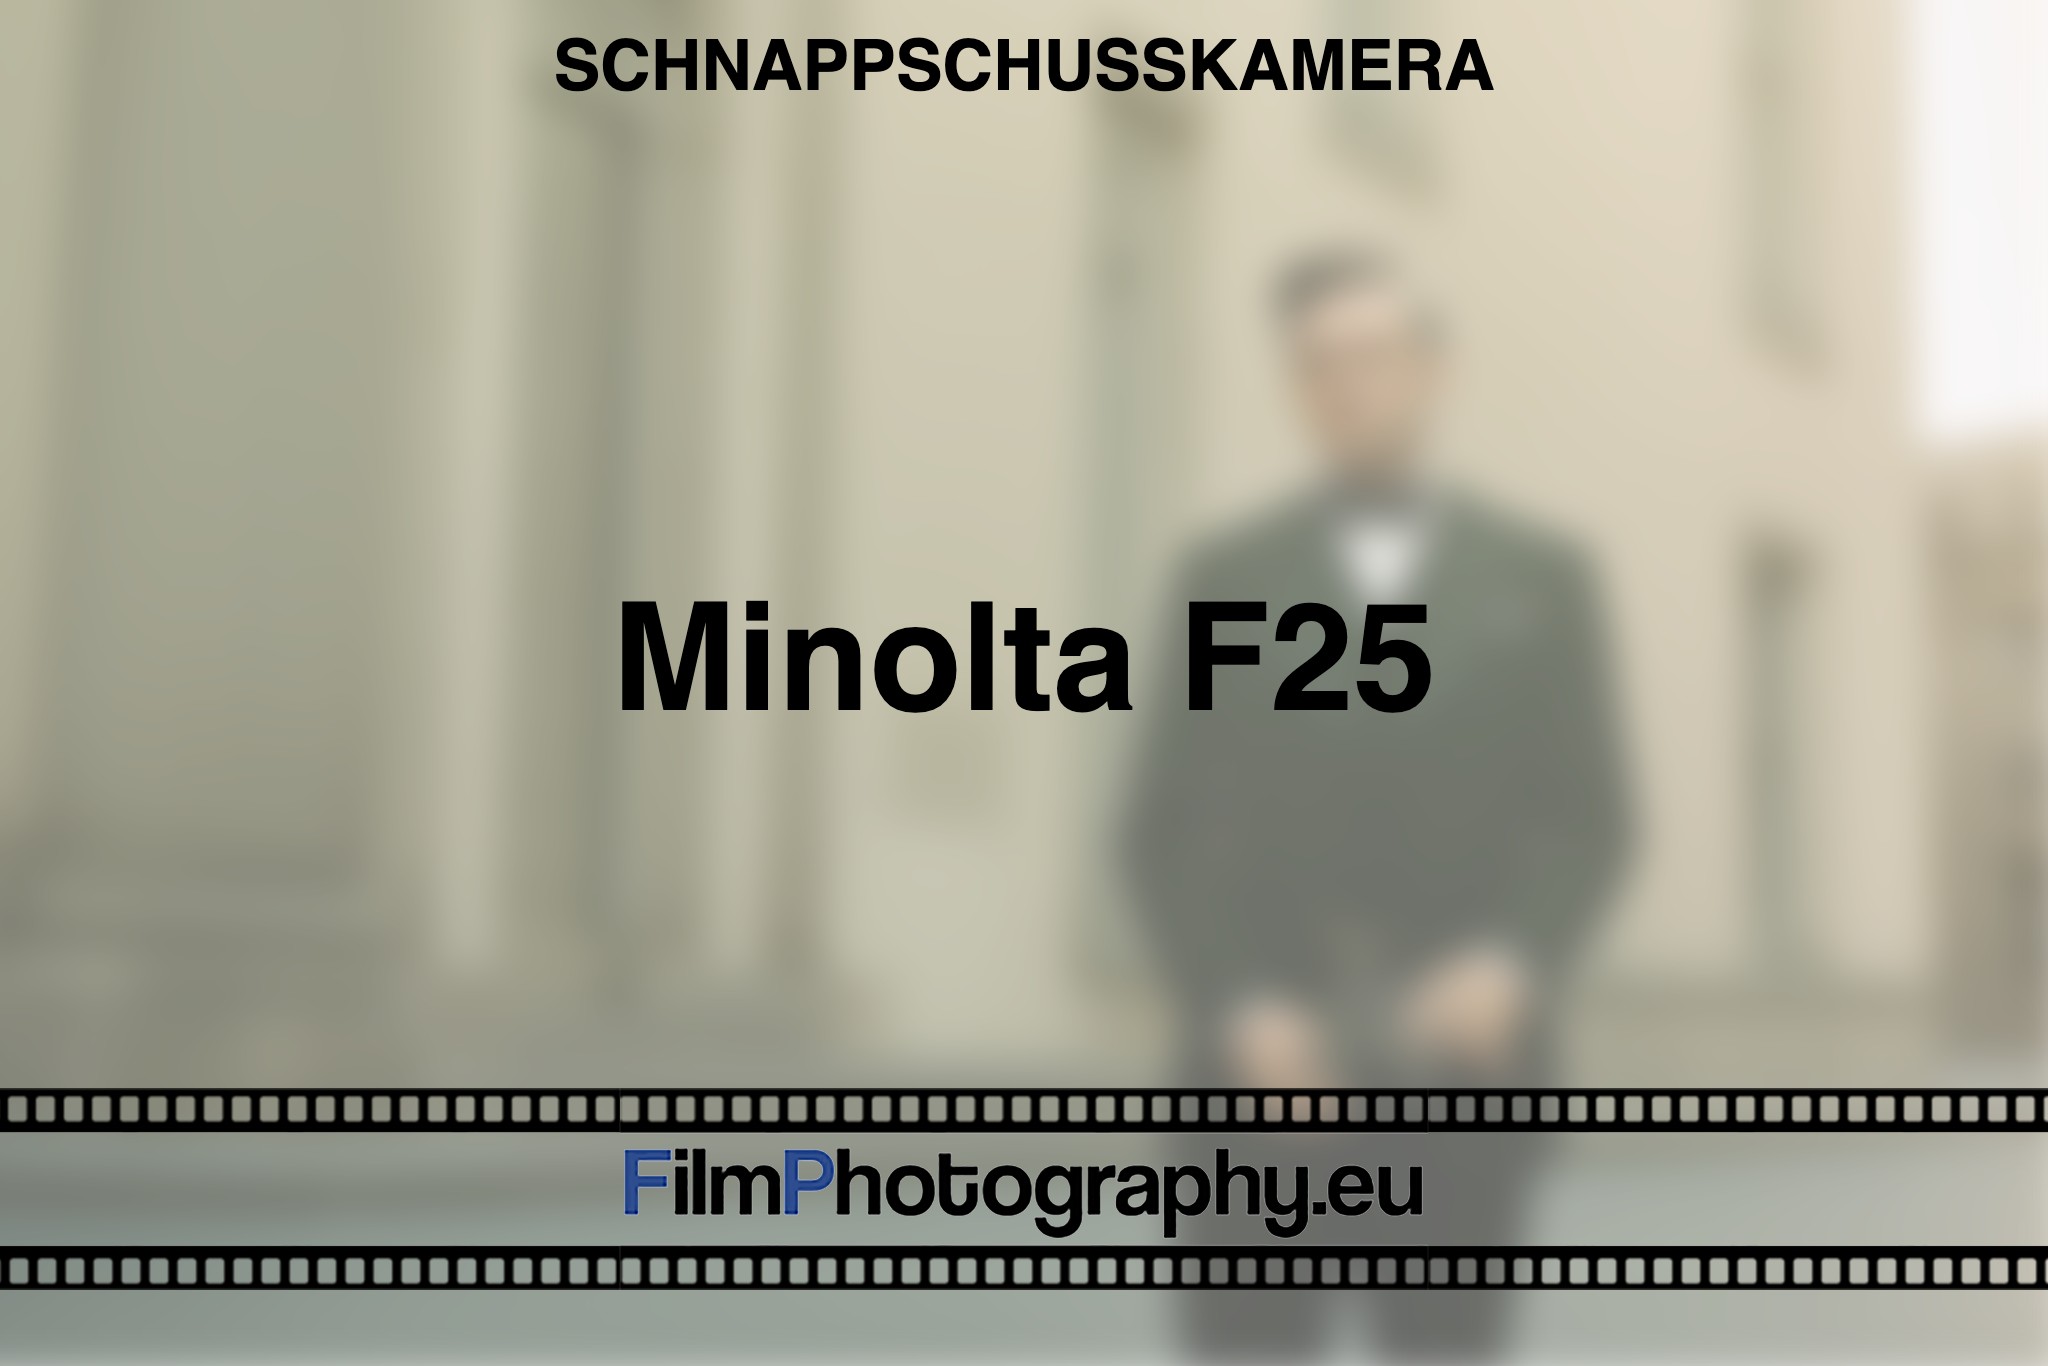 minolta-f25-schnappschusskamera-bnv